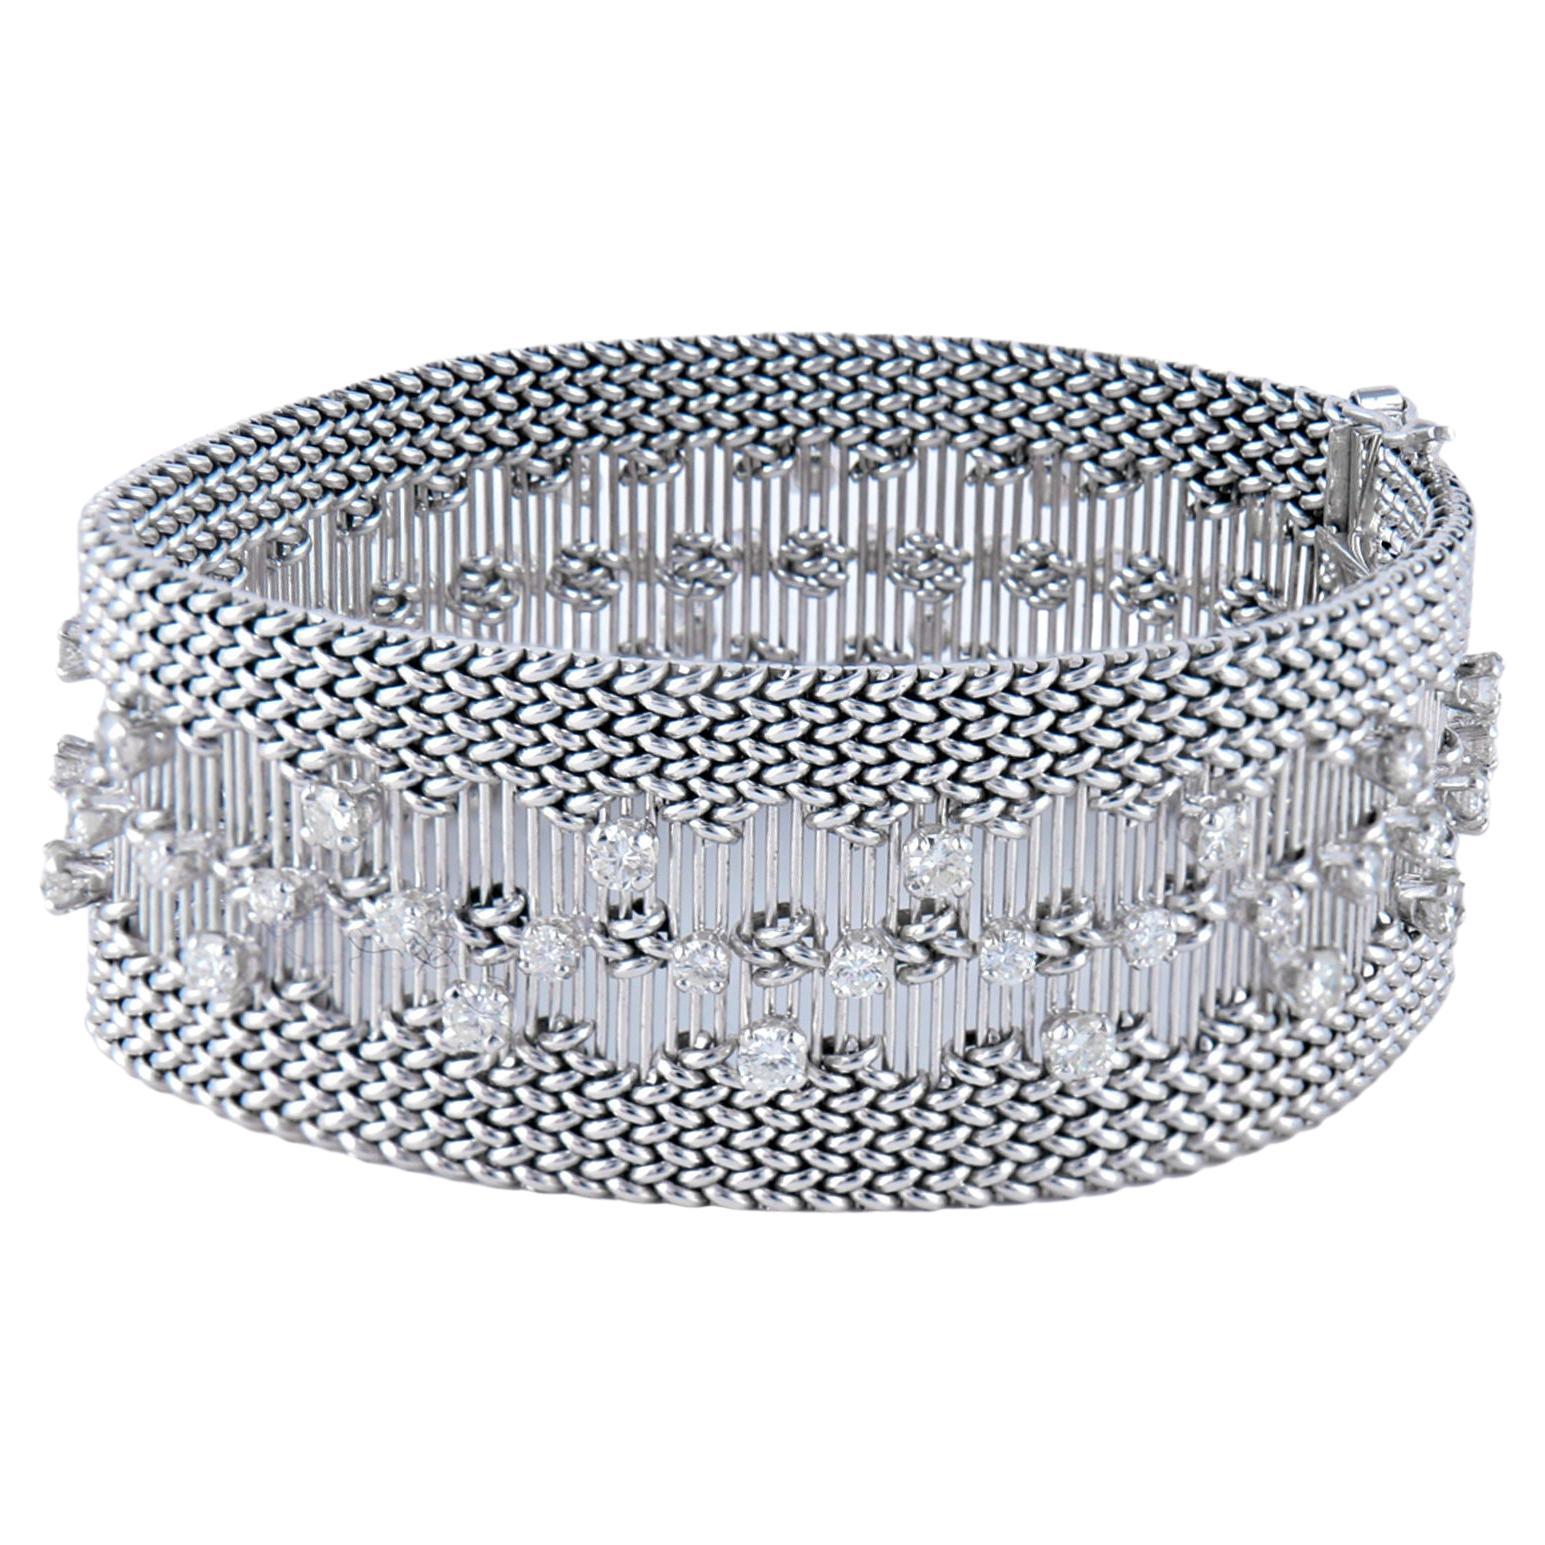 Bracelet Haute Joaillerie En ou 18 carats Serti De Diamants : 3,85 carats